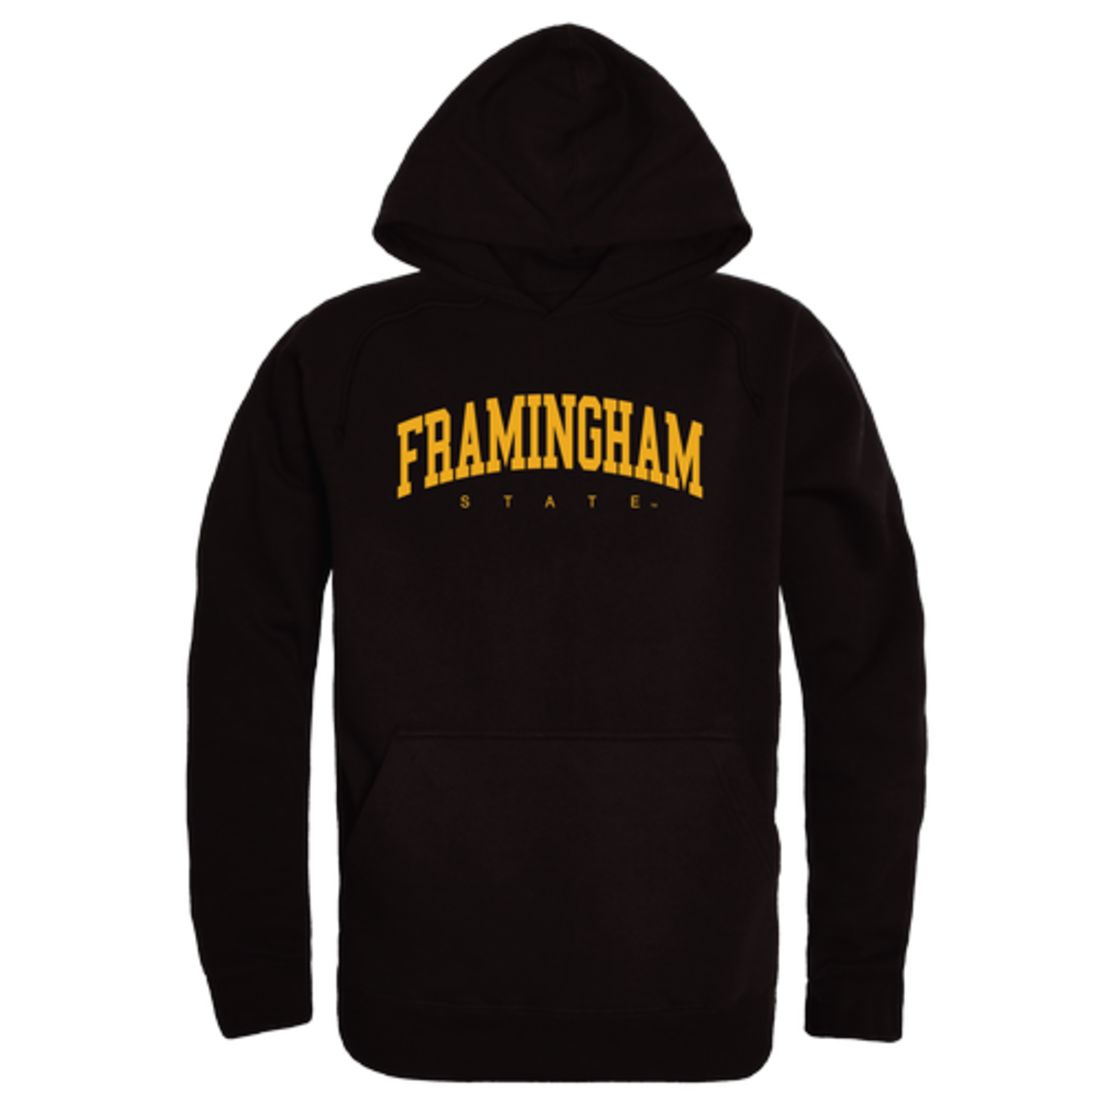 Framingham-State-University-Rams-Collegiate-Fleece-Hoodie-Sweatshirts